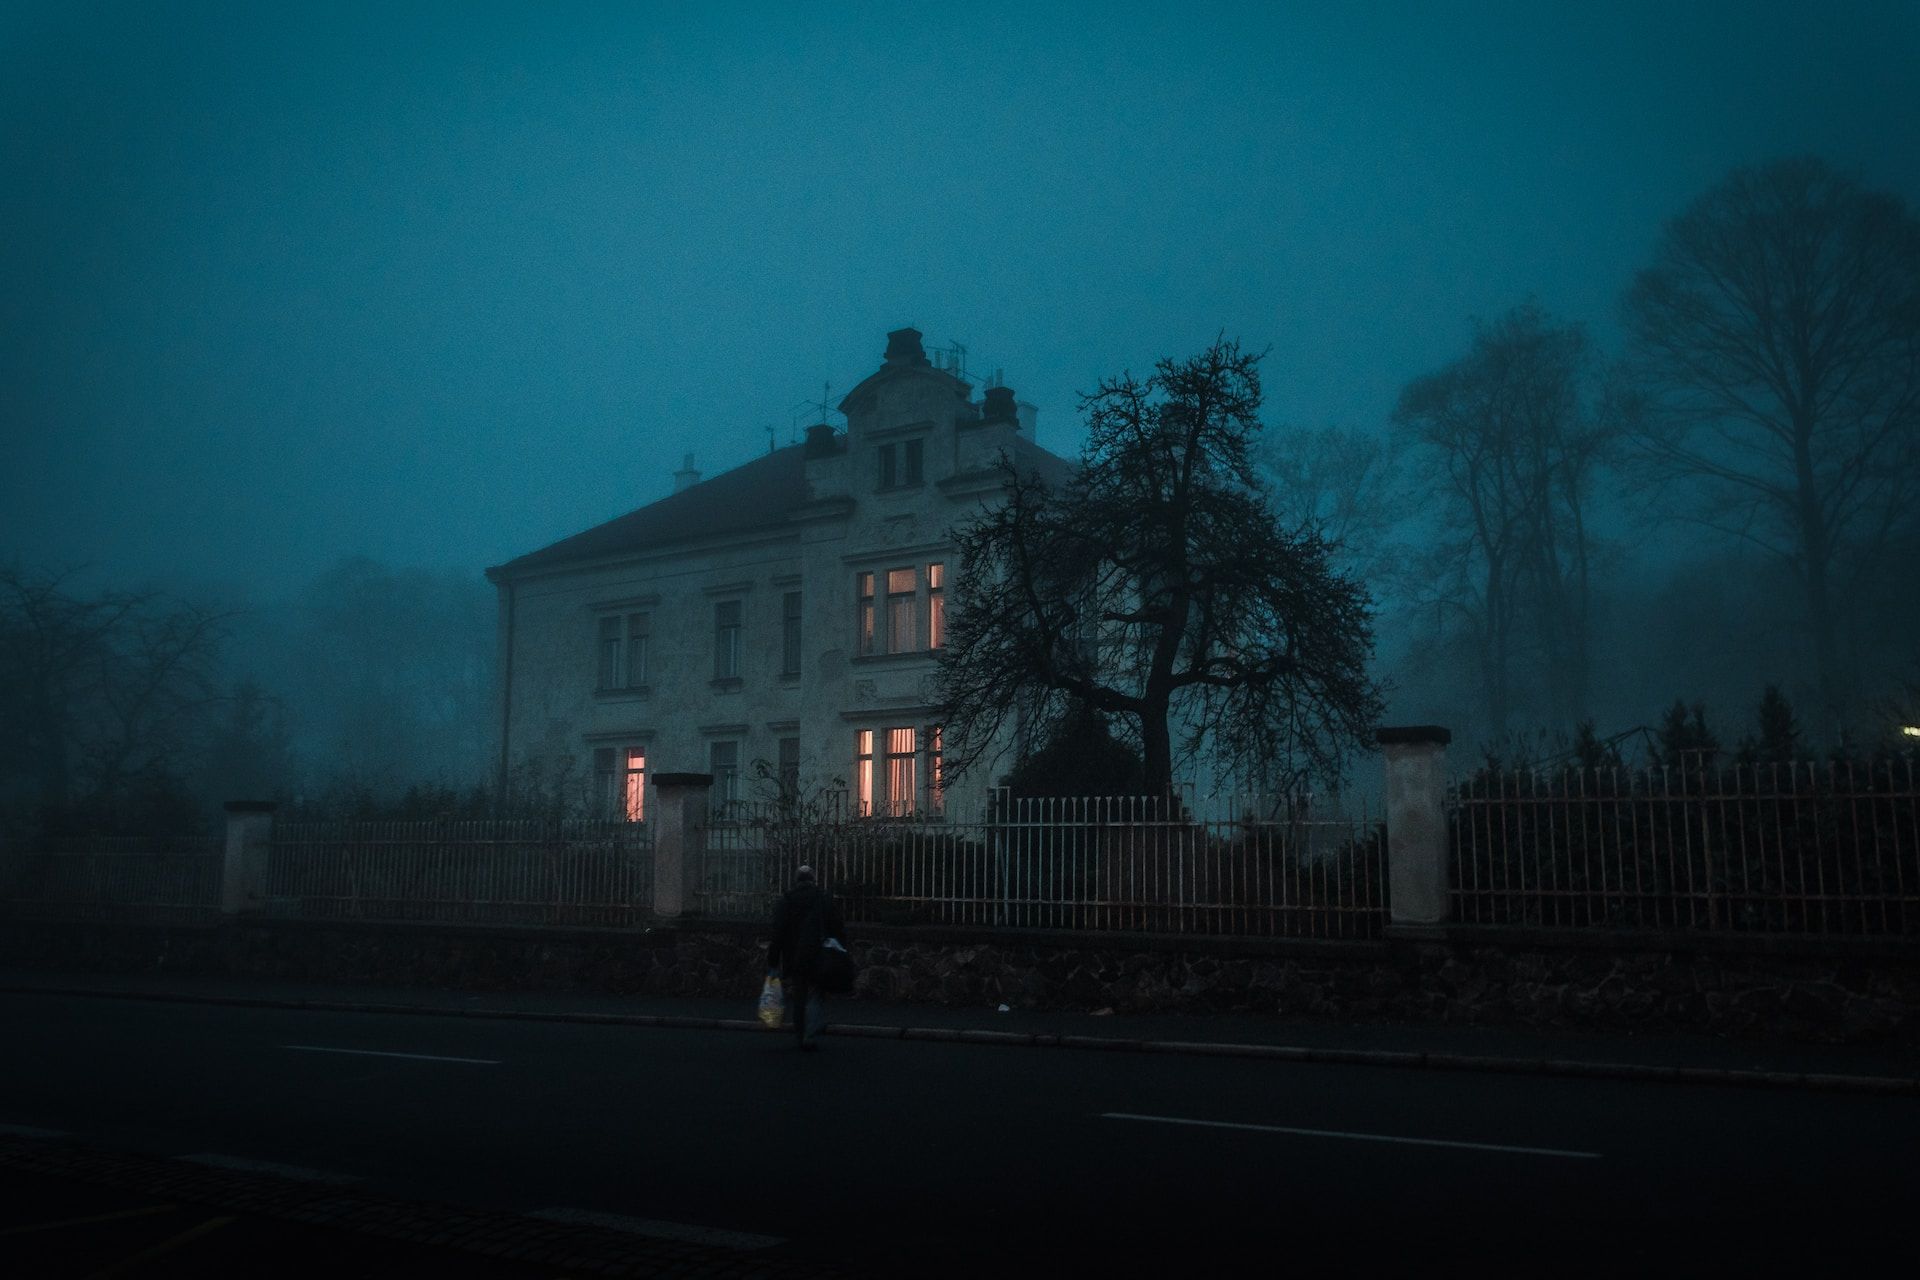 maison dans la nuit avec quelques fenêtres allumées - Photo de Ján Jakub Naništa sur https://unsplash.com/fr/photos/z9hvkSDWMIM